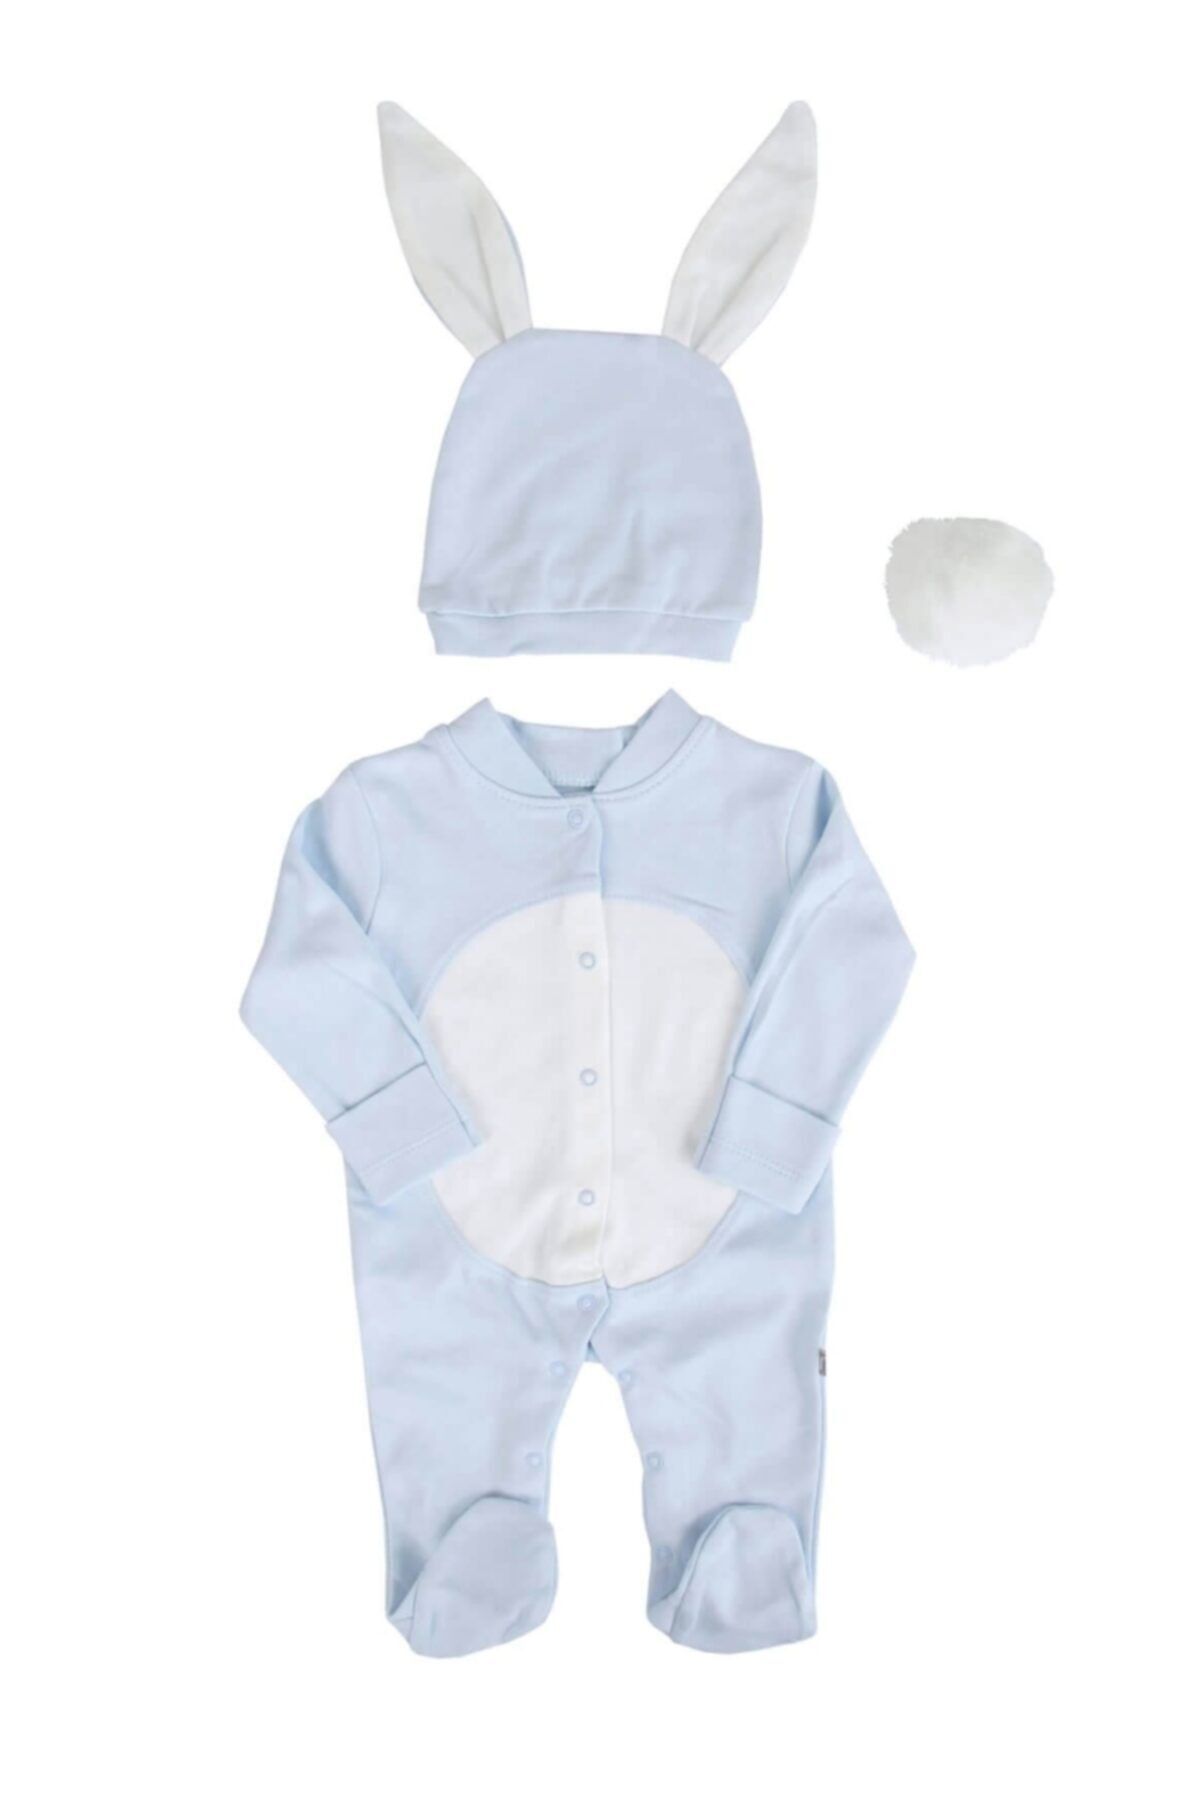 Mini Ropa Erkek Bebek Tavşan Model Mavi Kostüm Tulum - Bebek Doğum Hediyesi